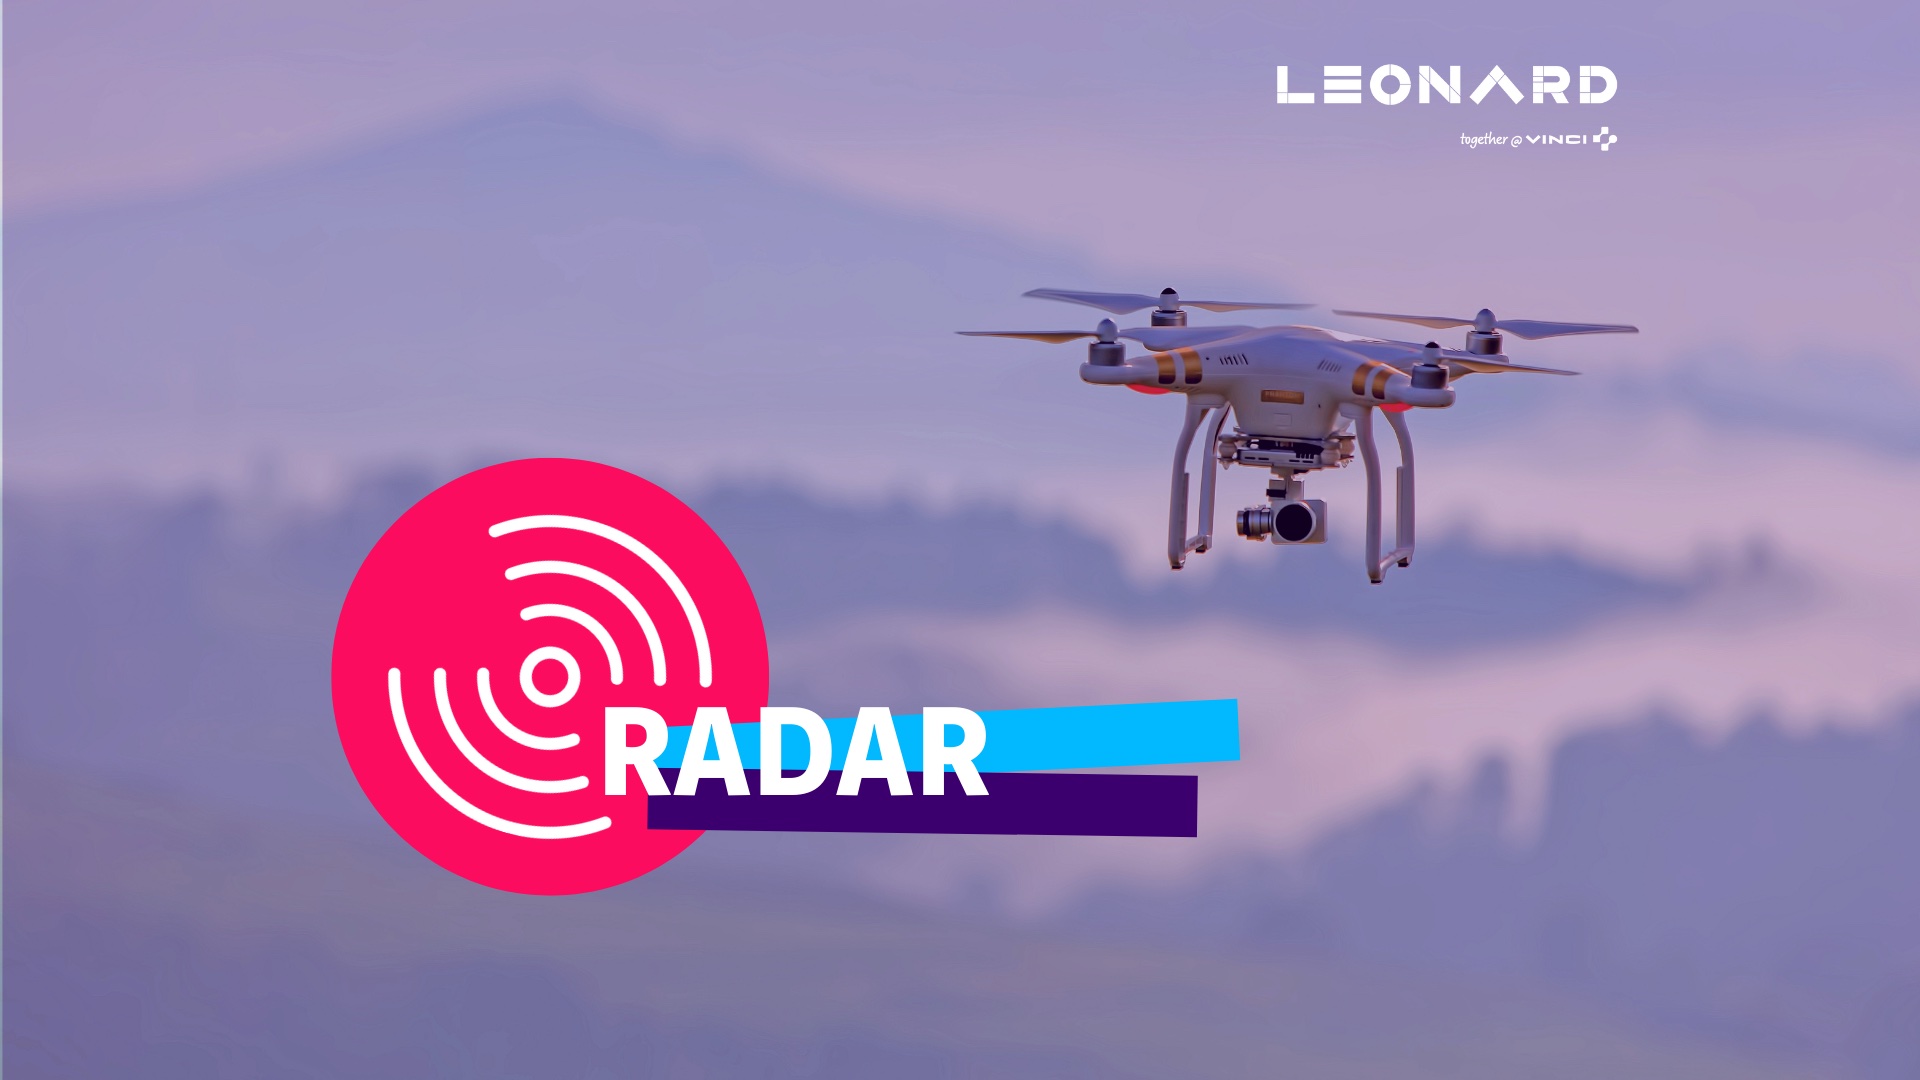 Radar – Notre sélection de business innovants #68